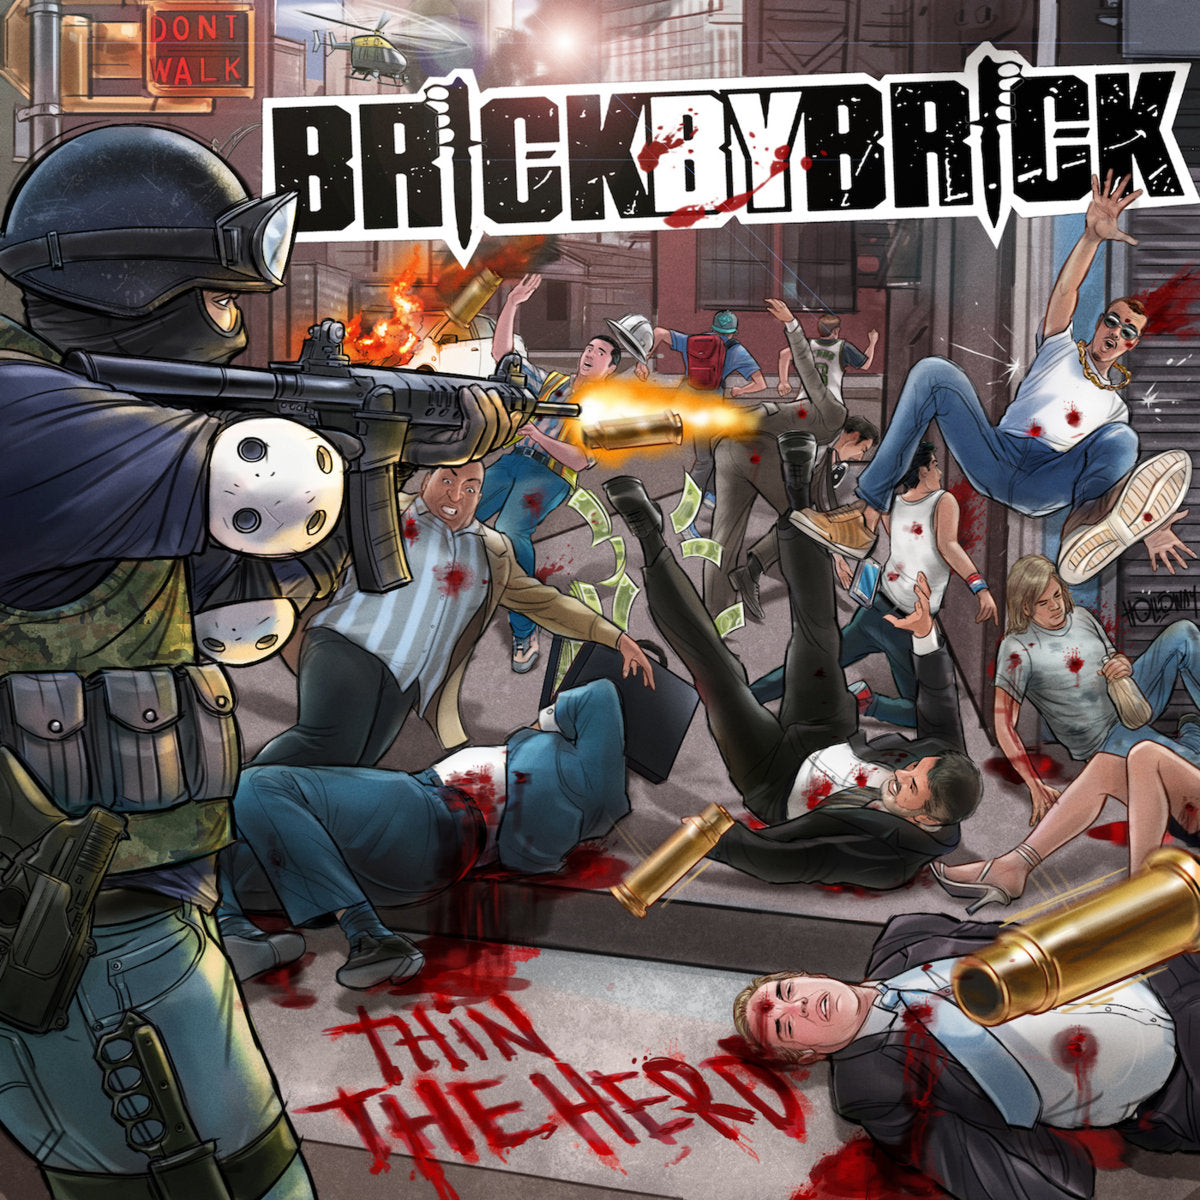 Brick By Brick - Thin The Herd